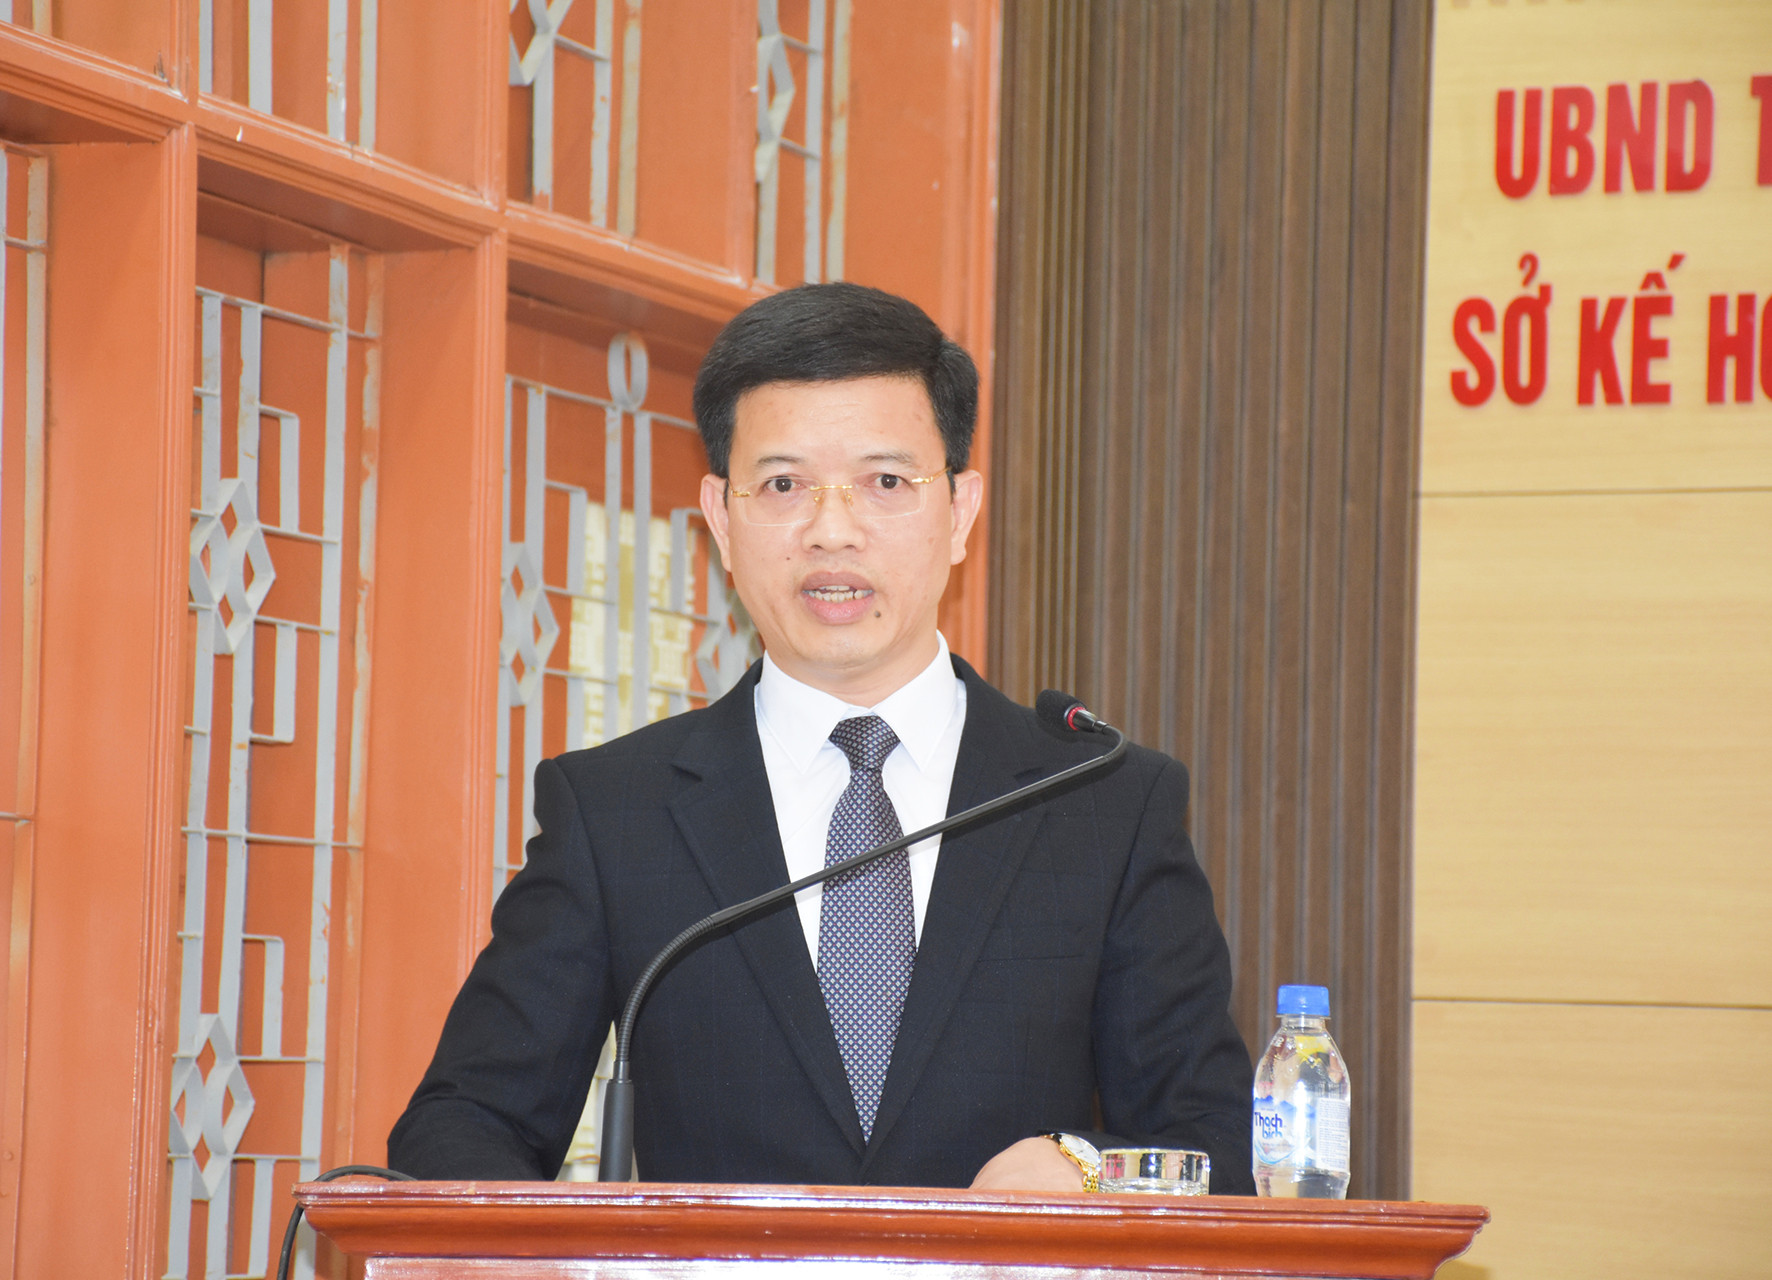 Phó Giám đốc Sở Kế hoạch và Đầu tư Nguyễn  Văn Trường phát biểu nhận nhiệm vụ. Ảnh: Thanh Lê